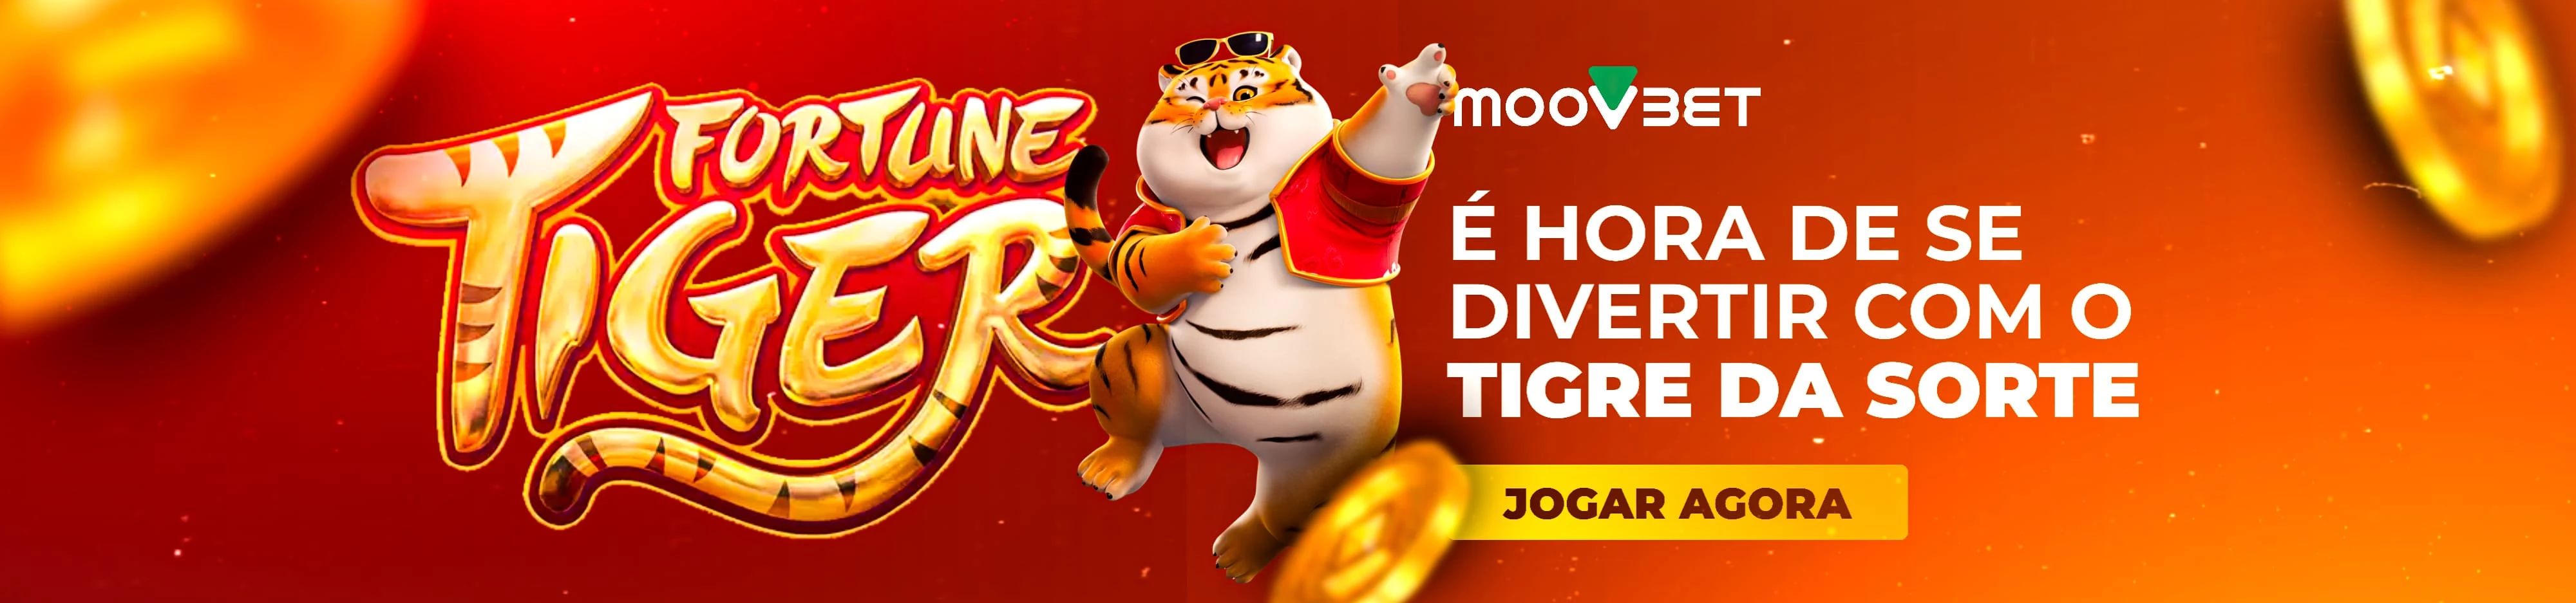 Aqui Acontece - Fortune Tiger: o jogo de caça-níqueis agitando o cenário  dos cassinos online no Brasil